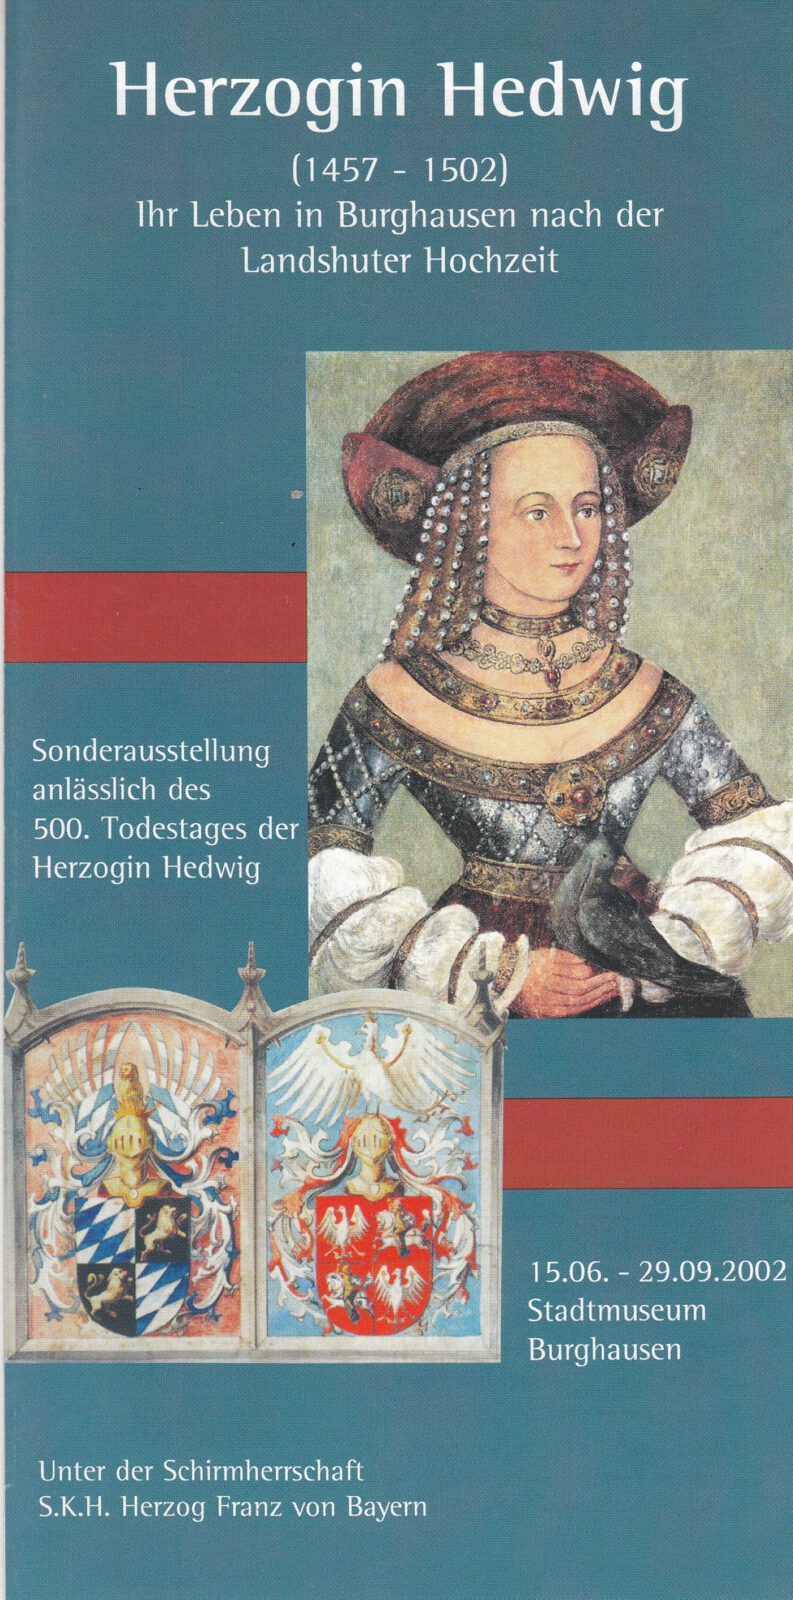 Titelbild Prospekt der Sonderausstellung Herzogin Hedwig, 2002. Porträt von Herzogin Hedwig mit einer Taube in der Hand.